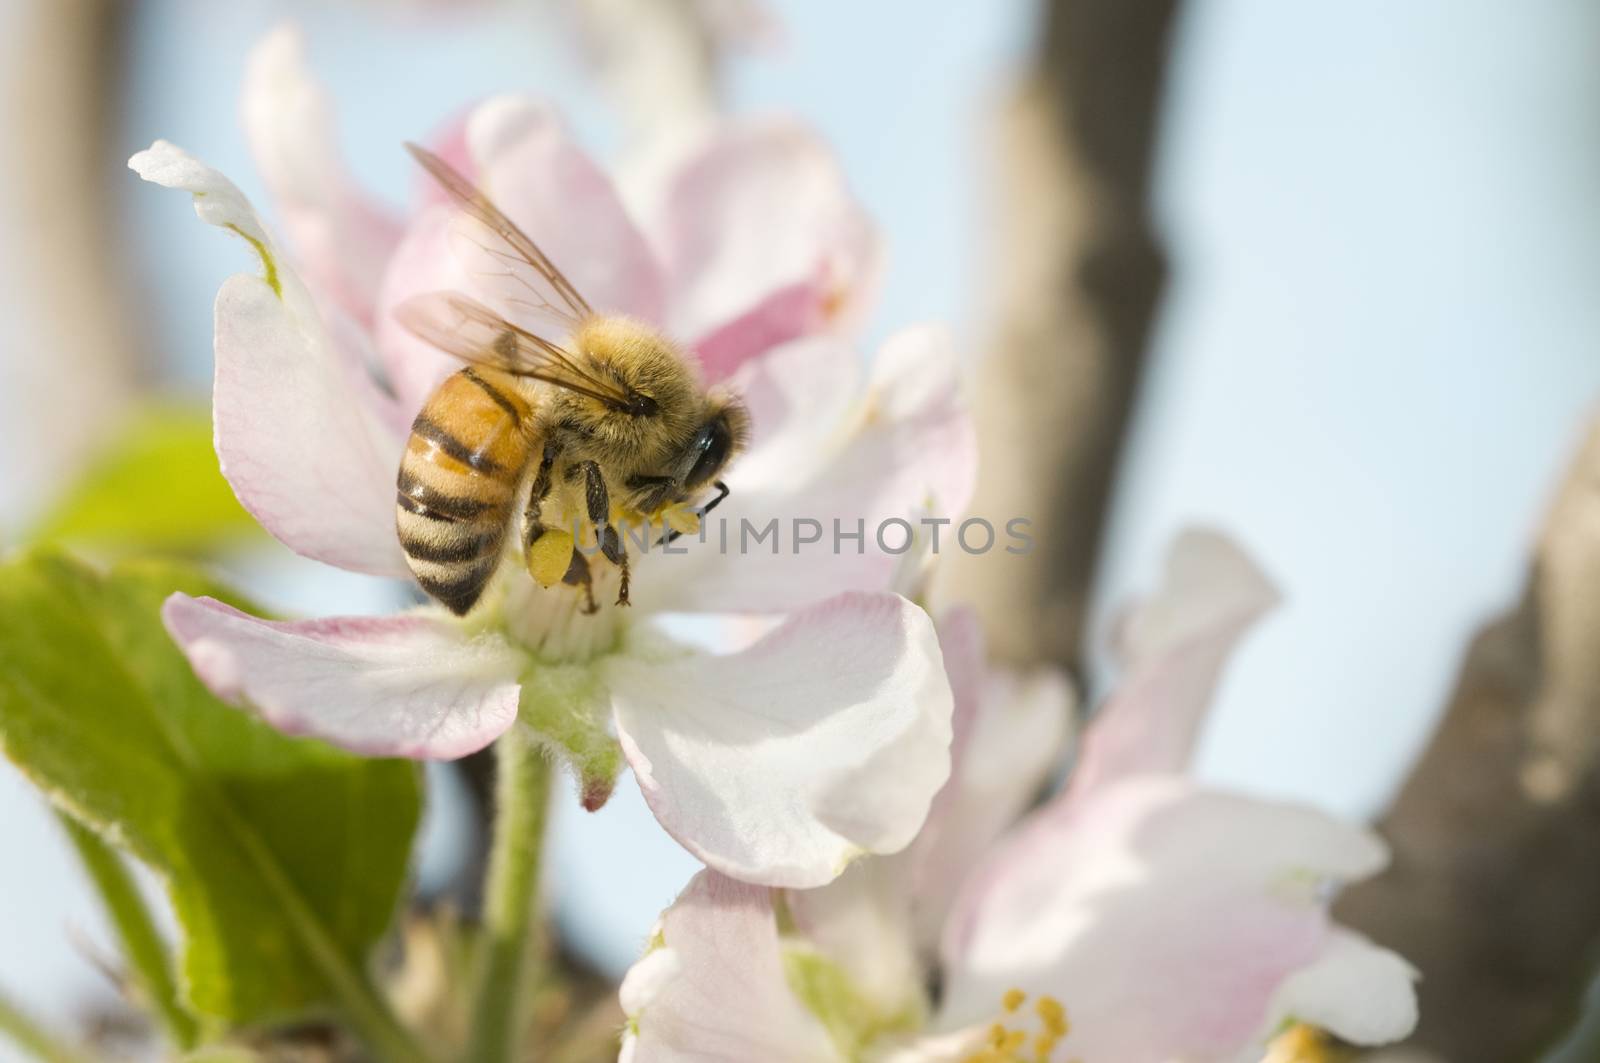 Western honey bee or European honey bee (Apis mellifera) by Njean